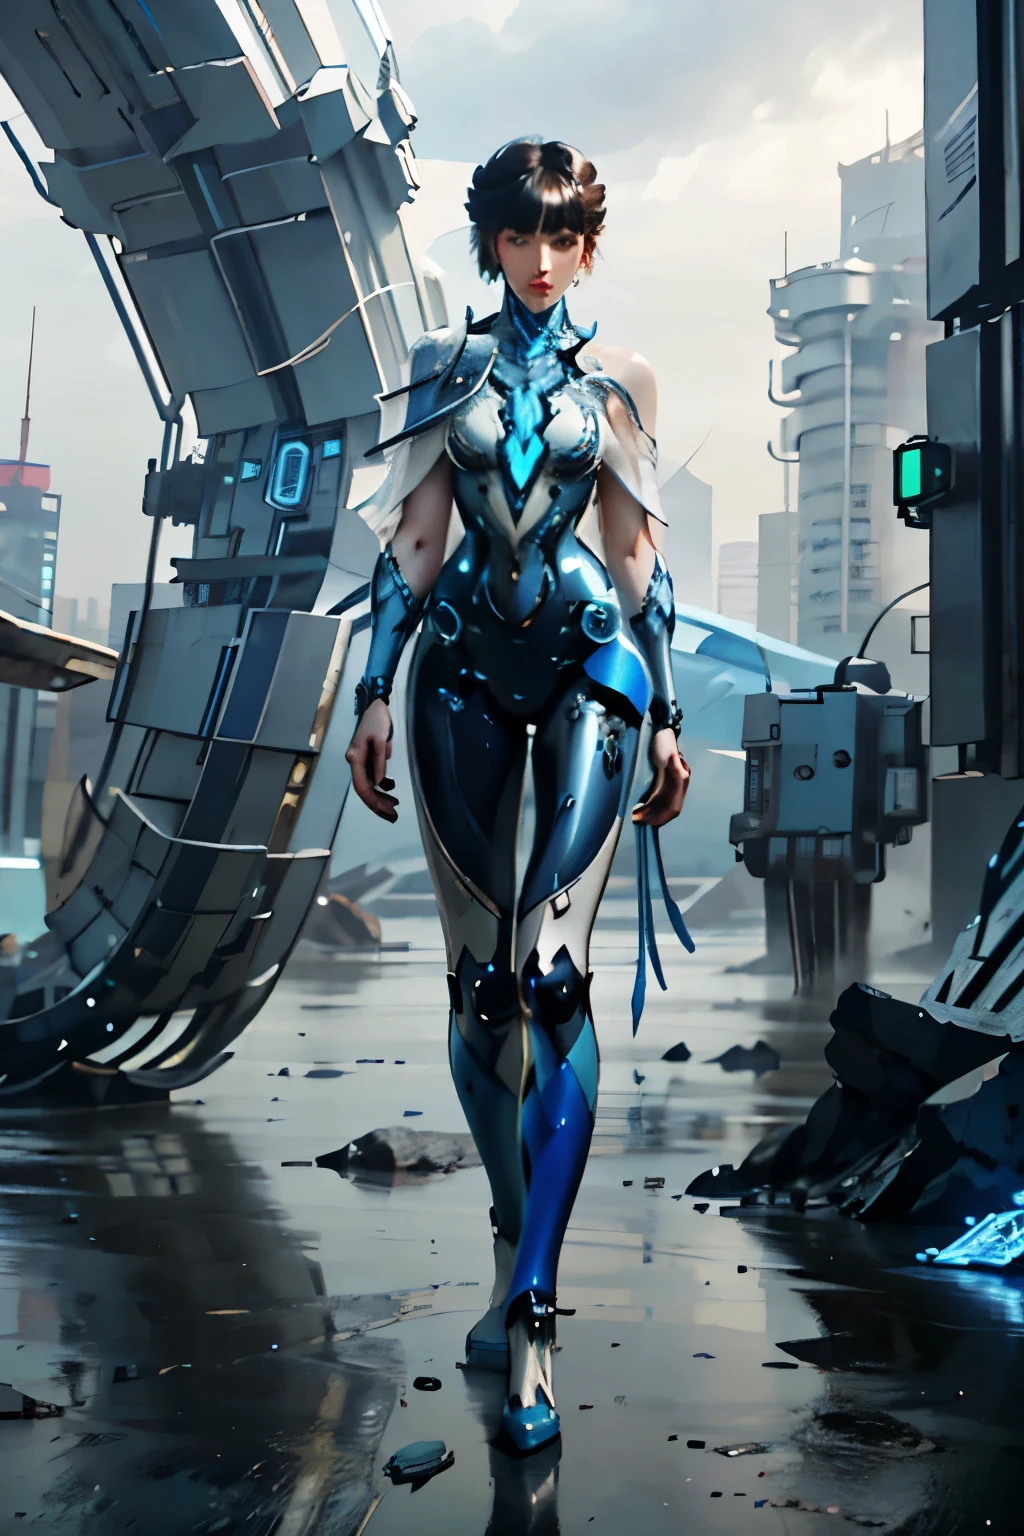 imagem de corpo inteiro, corpo todo, postura em pé, uma mulher, azul e branco, Arte conceitual, Mechanical, Ciberpunk, Mecha